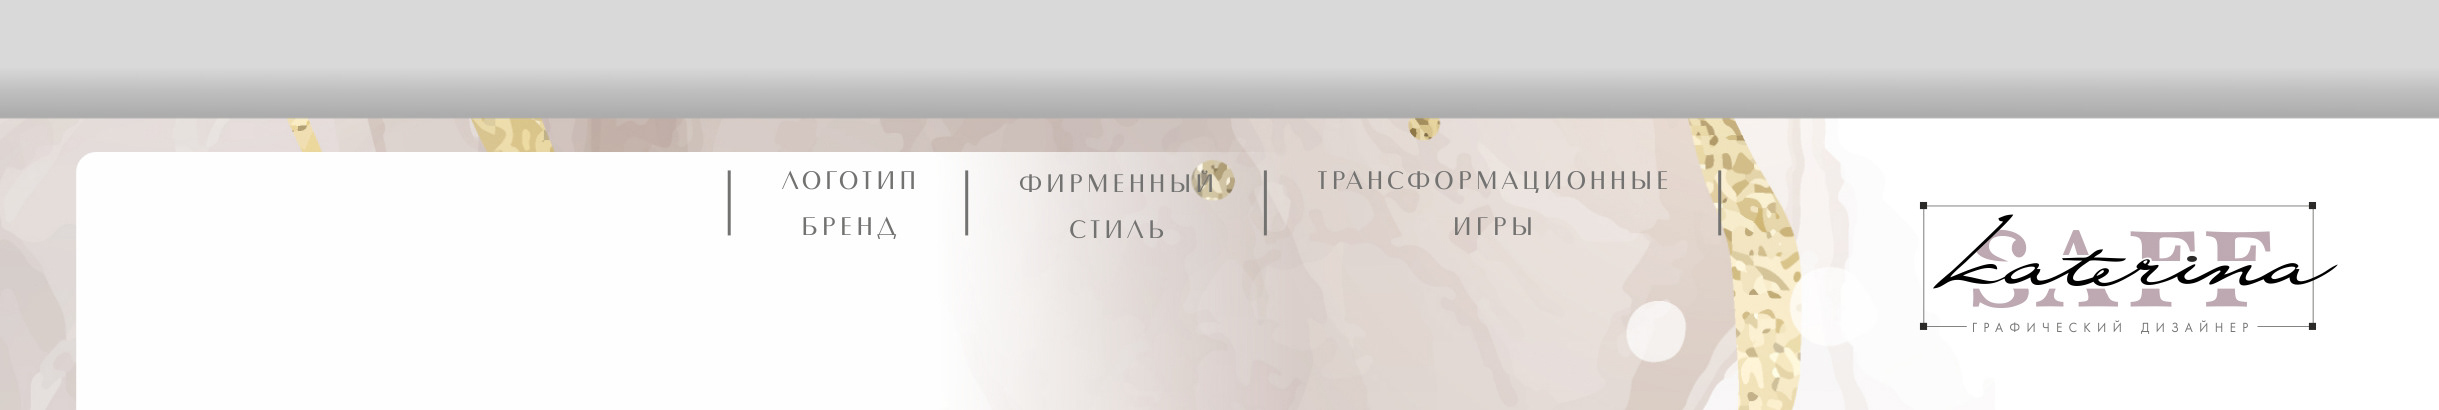 Баннер профиля Екатерина Сафронова